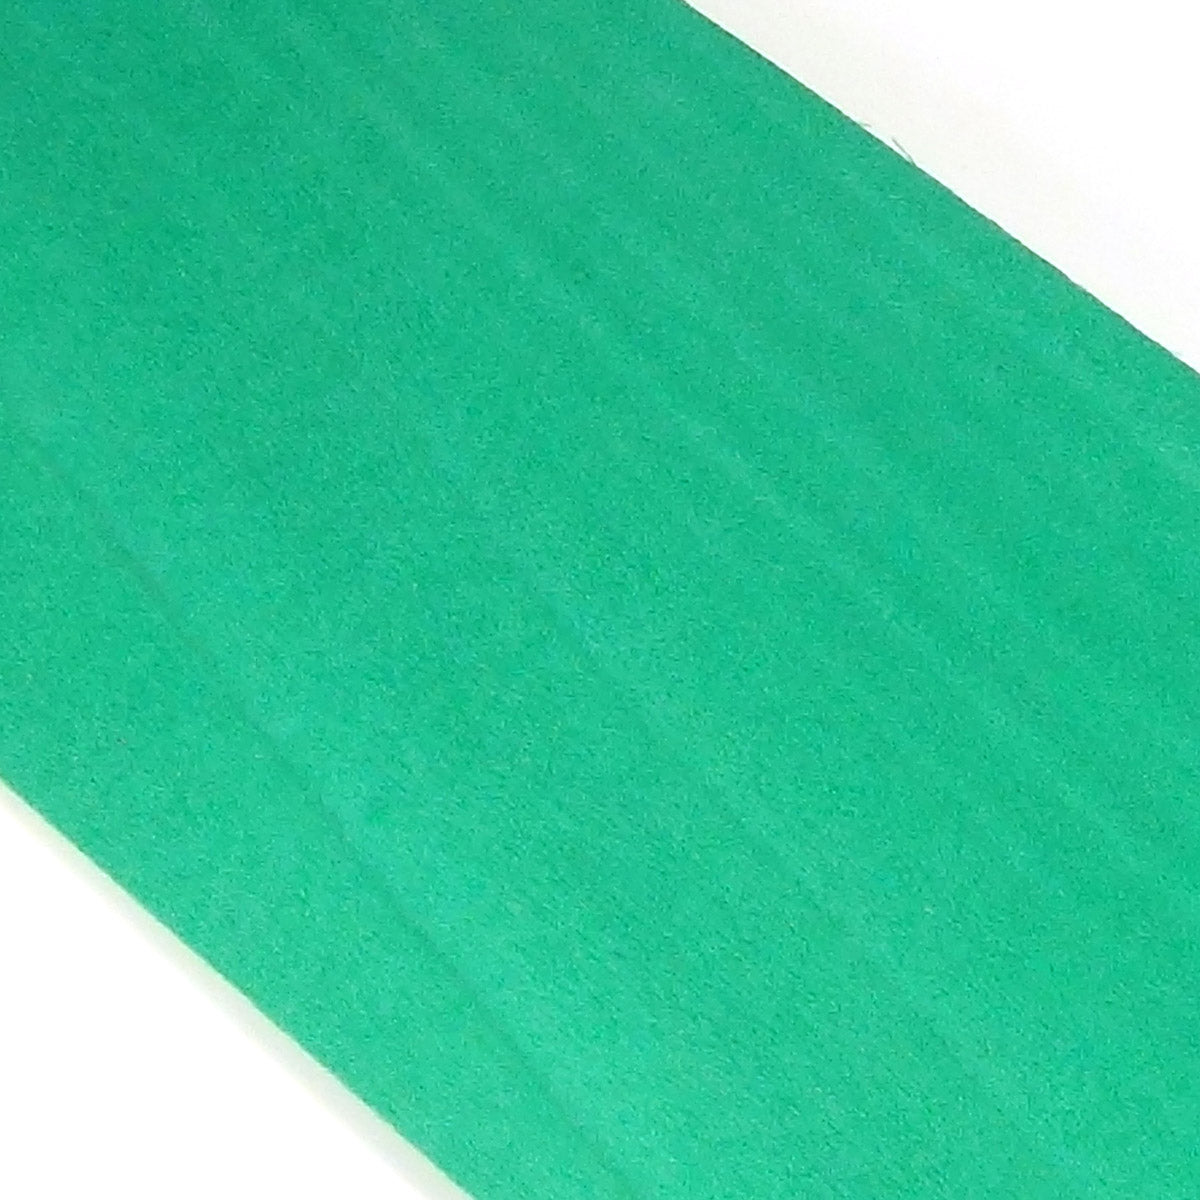 Dyed wood Veneer Green